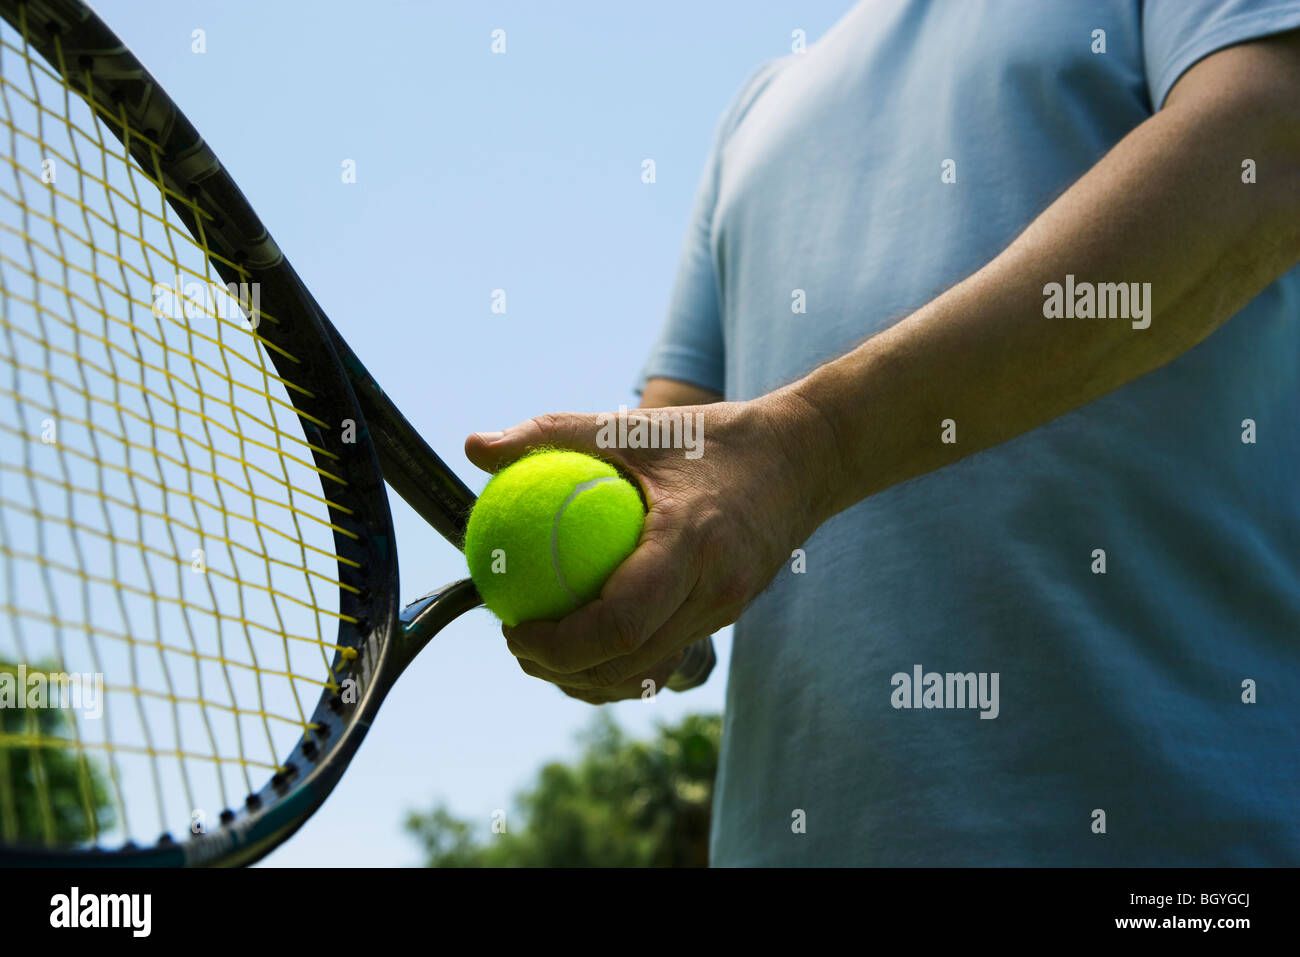 Joueur de tennis se préparer à servir, cropped Banque D'Images